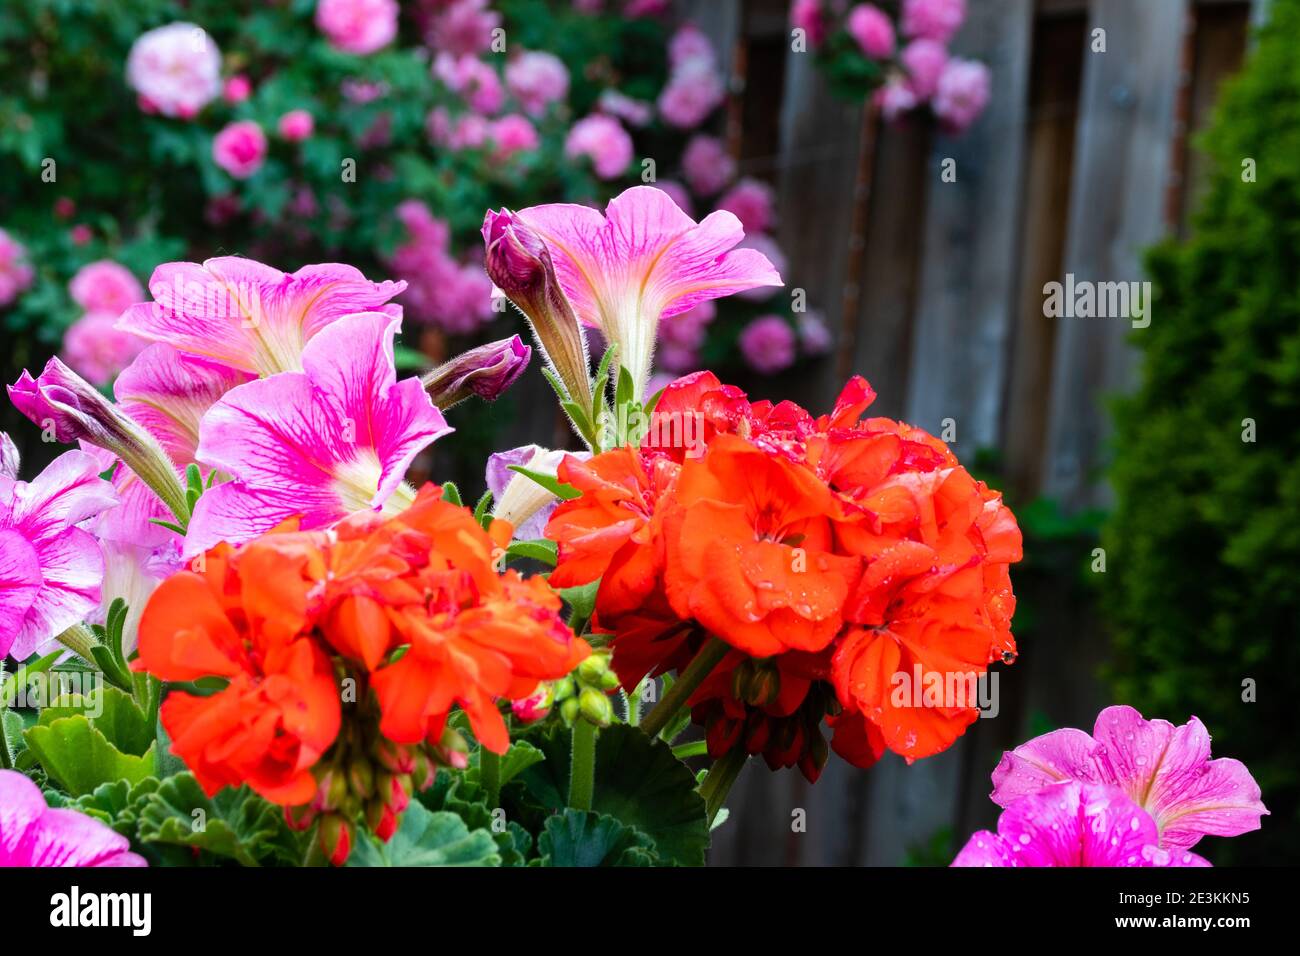 Les annuals orange vif tentent de voler l'attention de les fleurs roses Banque D'Images